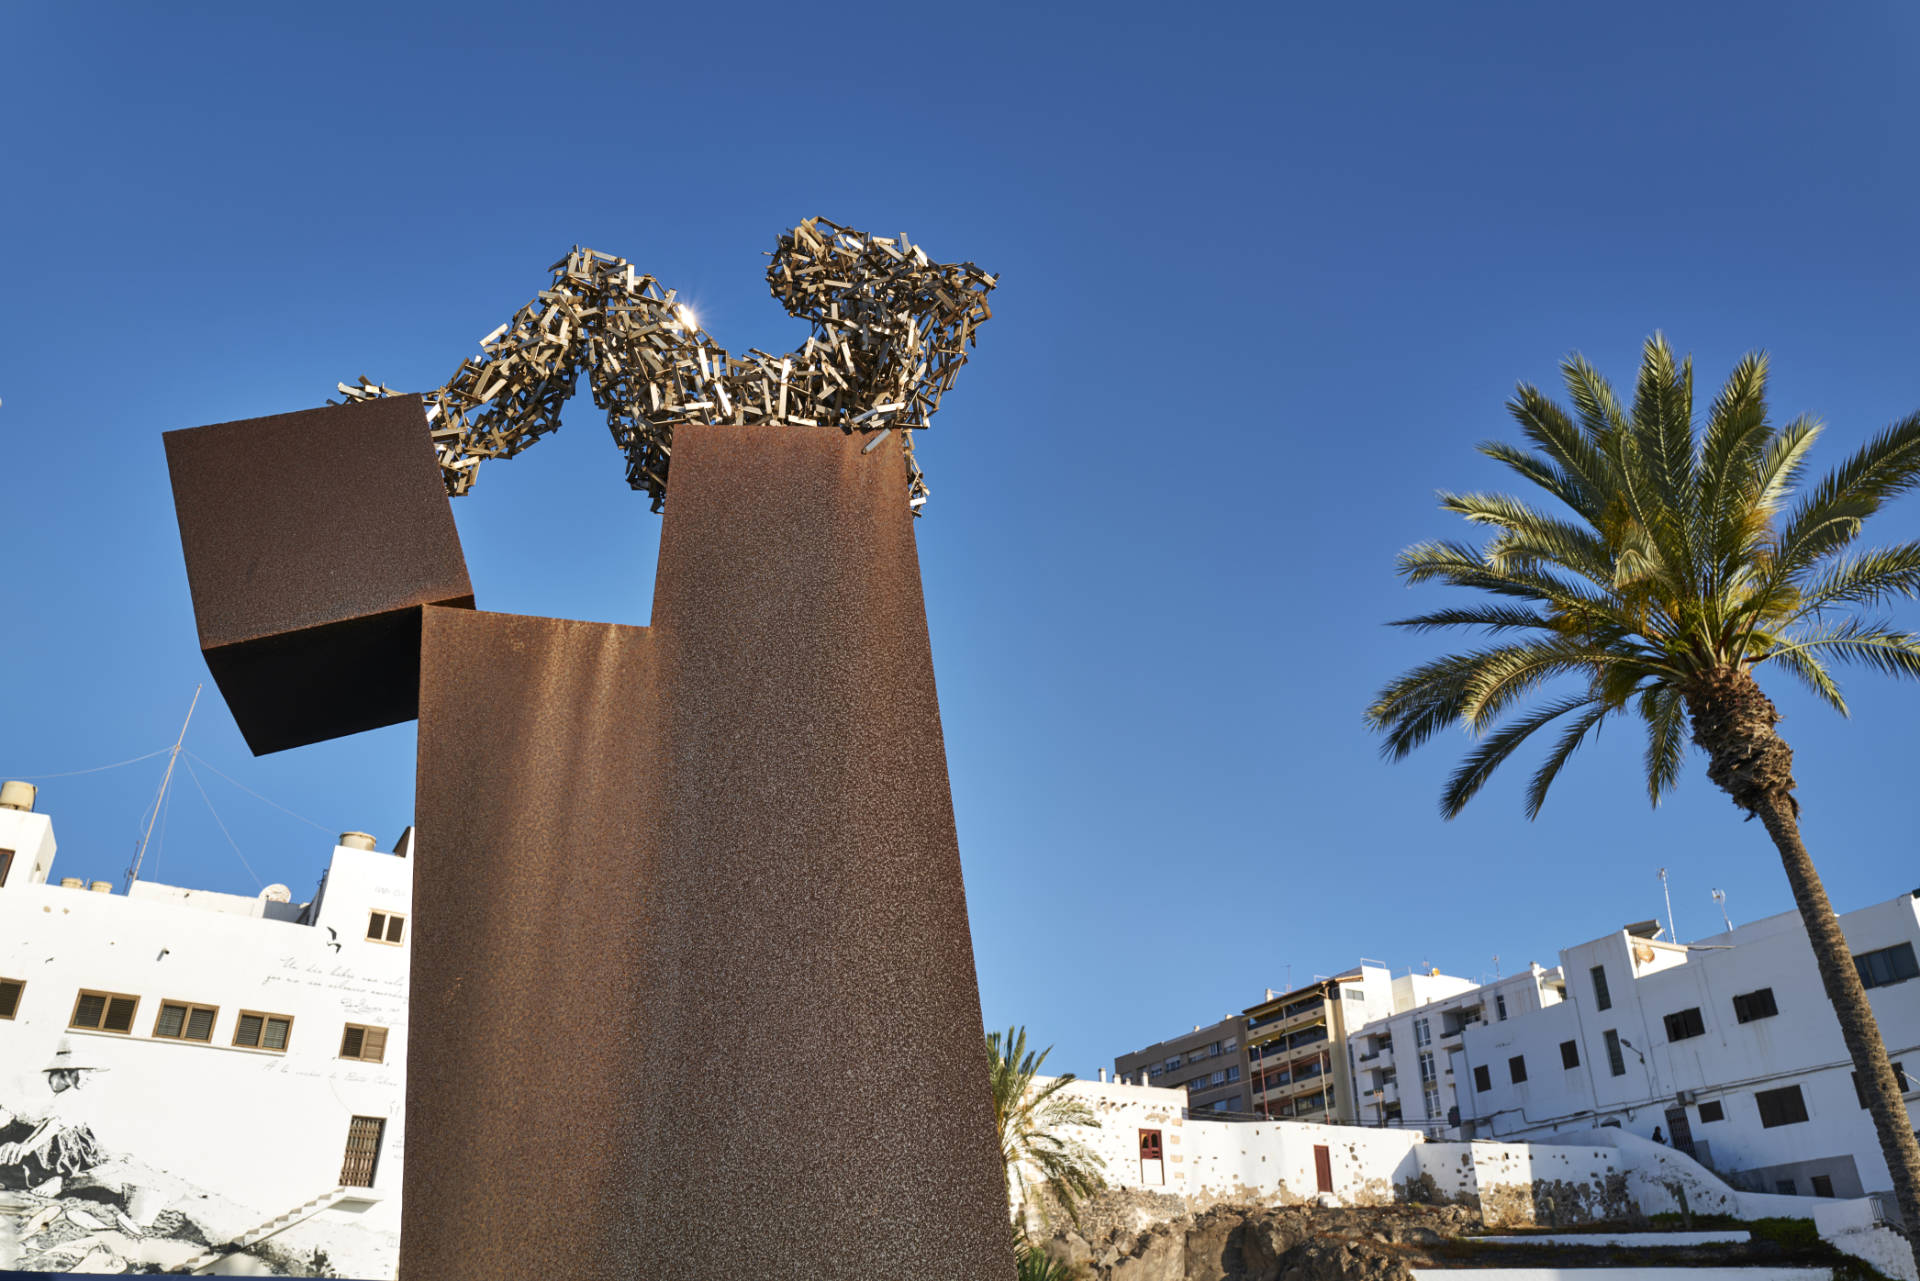 Parque de Esculturas Puerto del Rosario Fuerteventura.